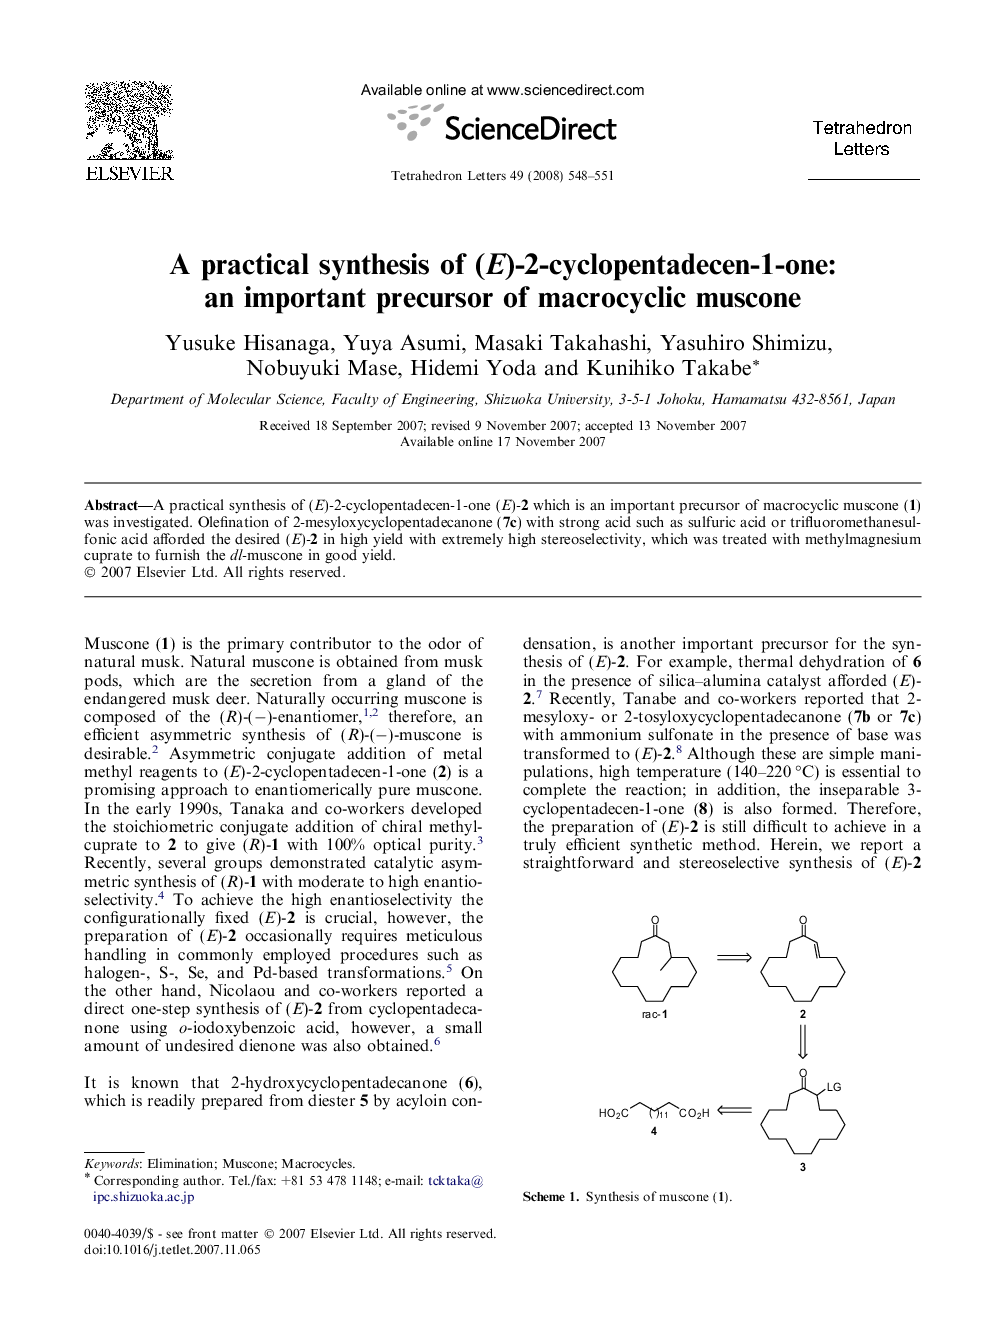 A practical synthesis of (E)-2-cyclopentadecen-1-one: an important precursor of macrocyclic muscone